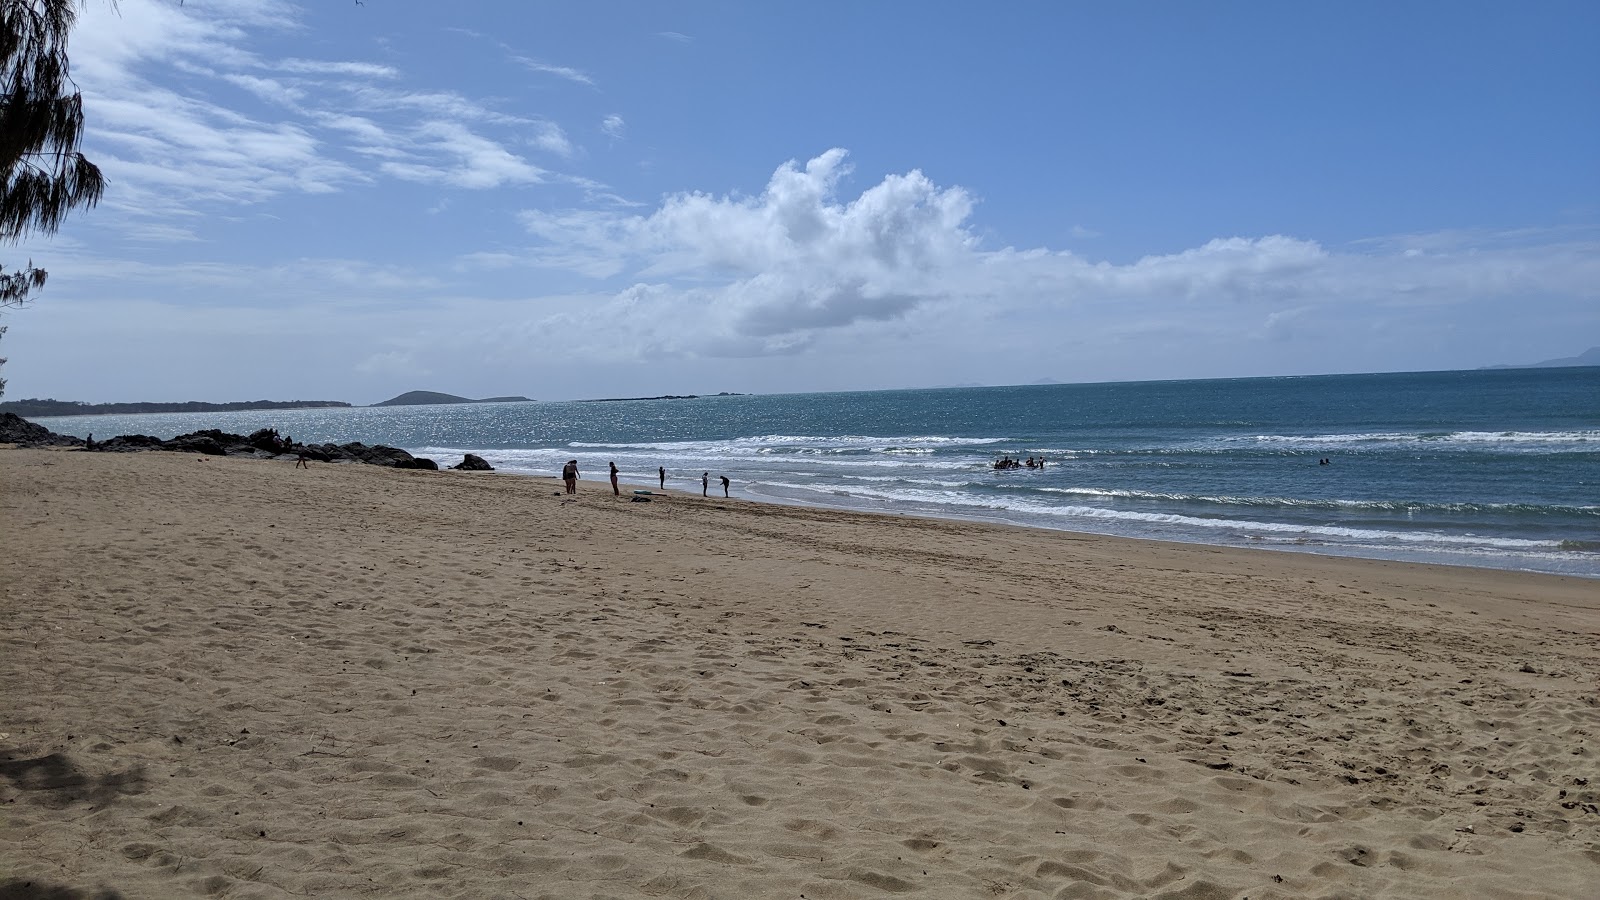 Fotografie cu Eimeo Beach - locul popular printre cunoscătorii de relaxare